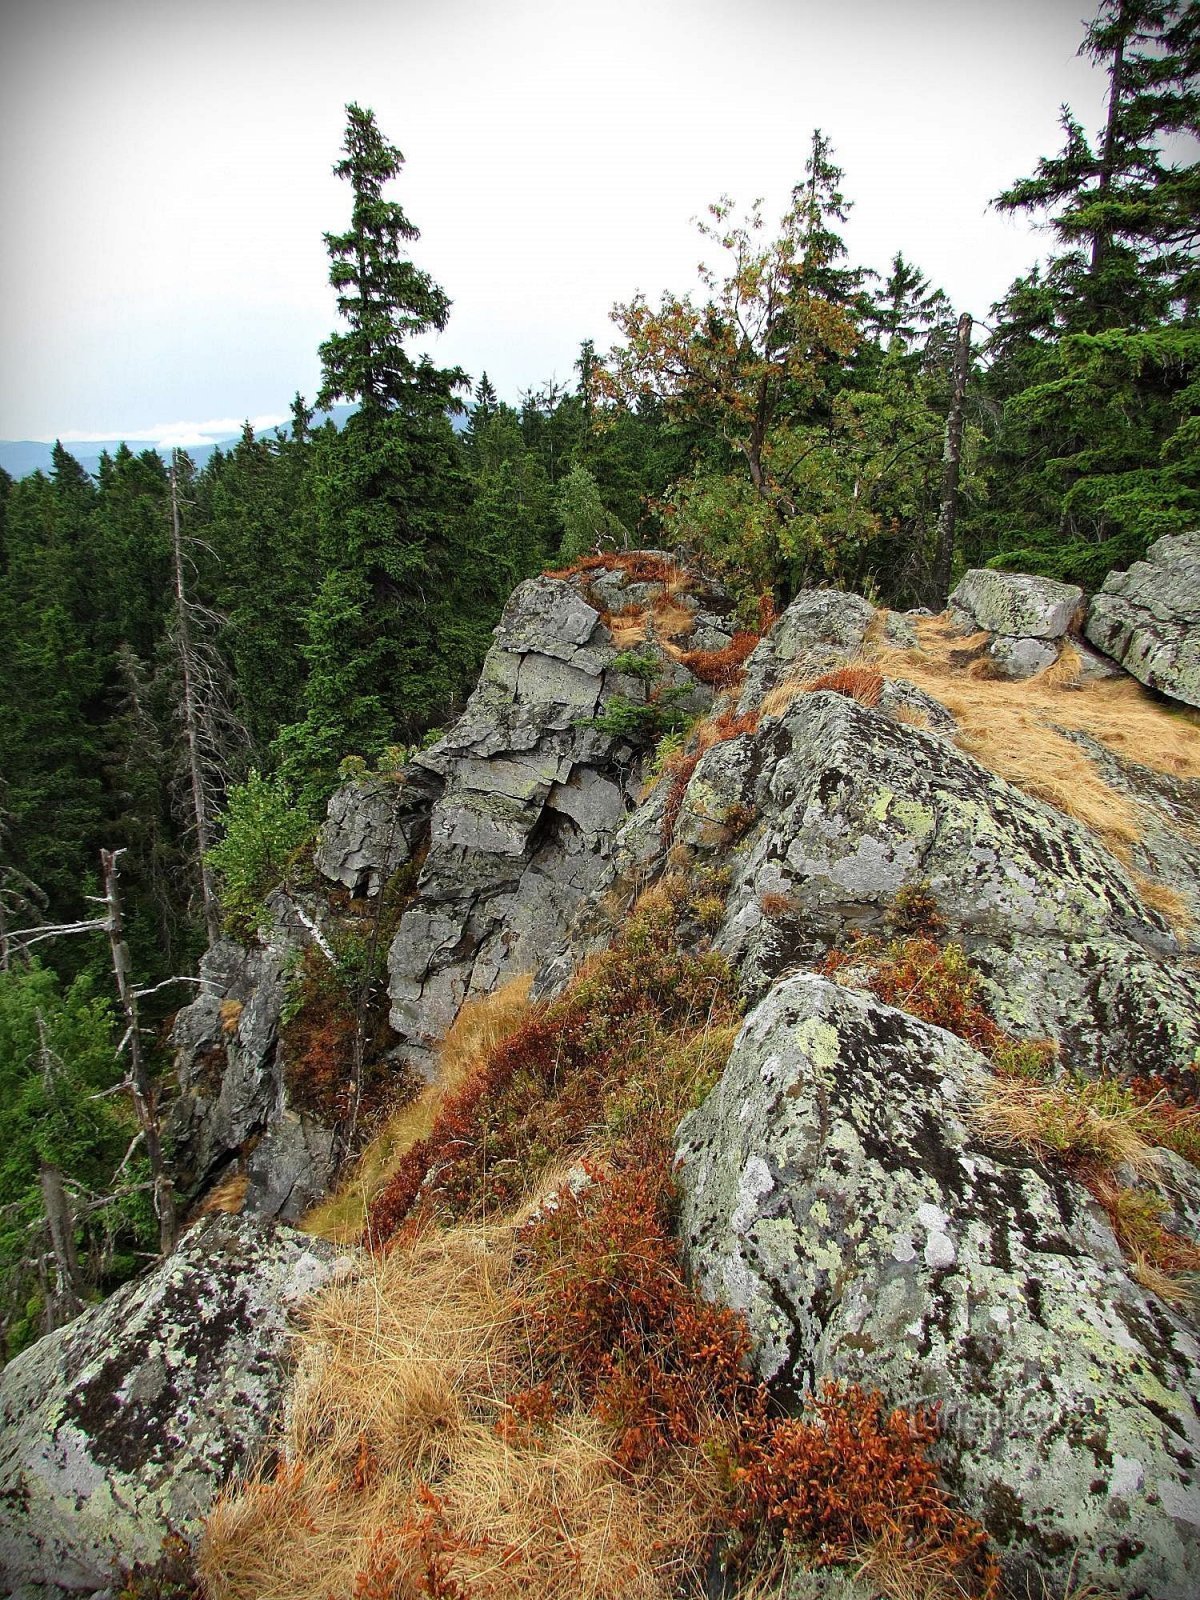 Jesenice rock viewpoints - 9. Rocks